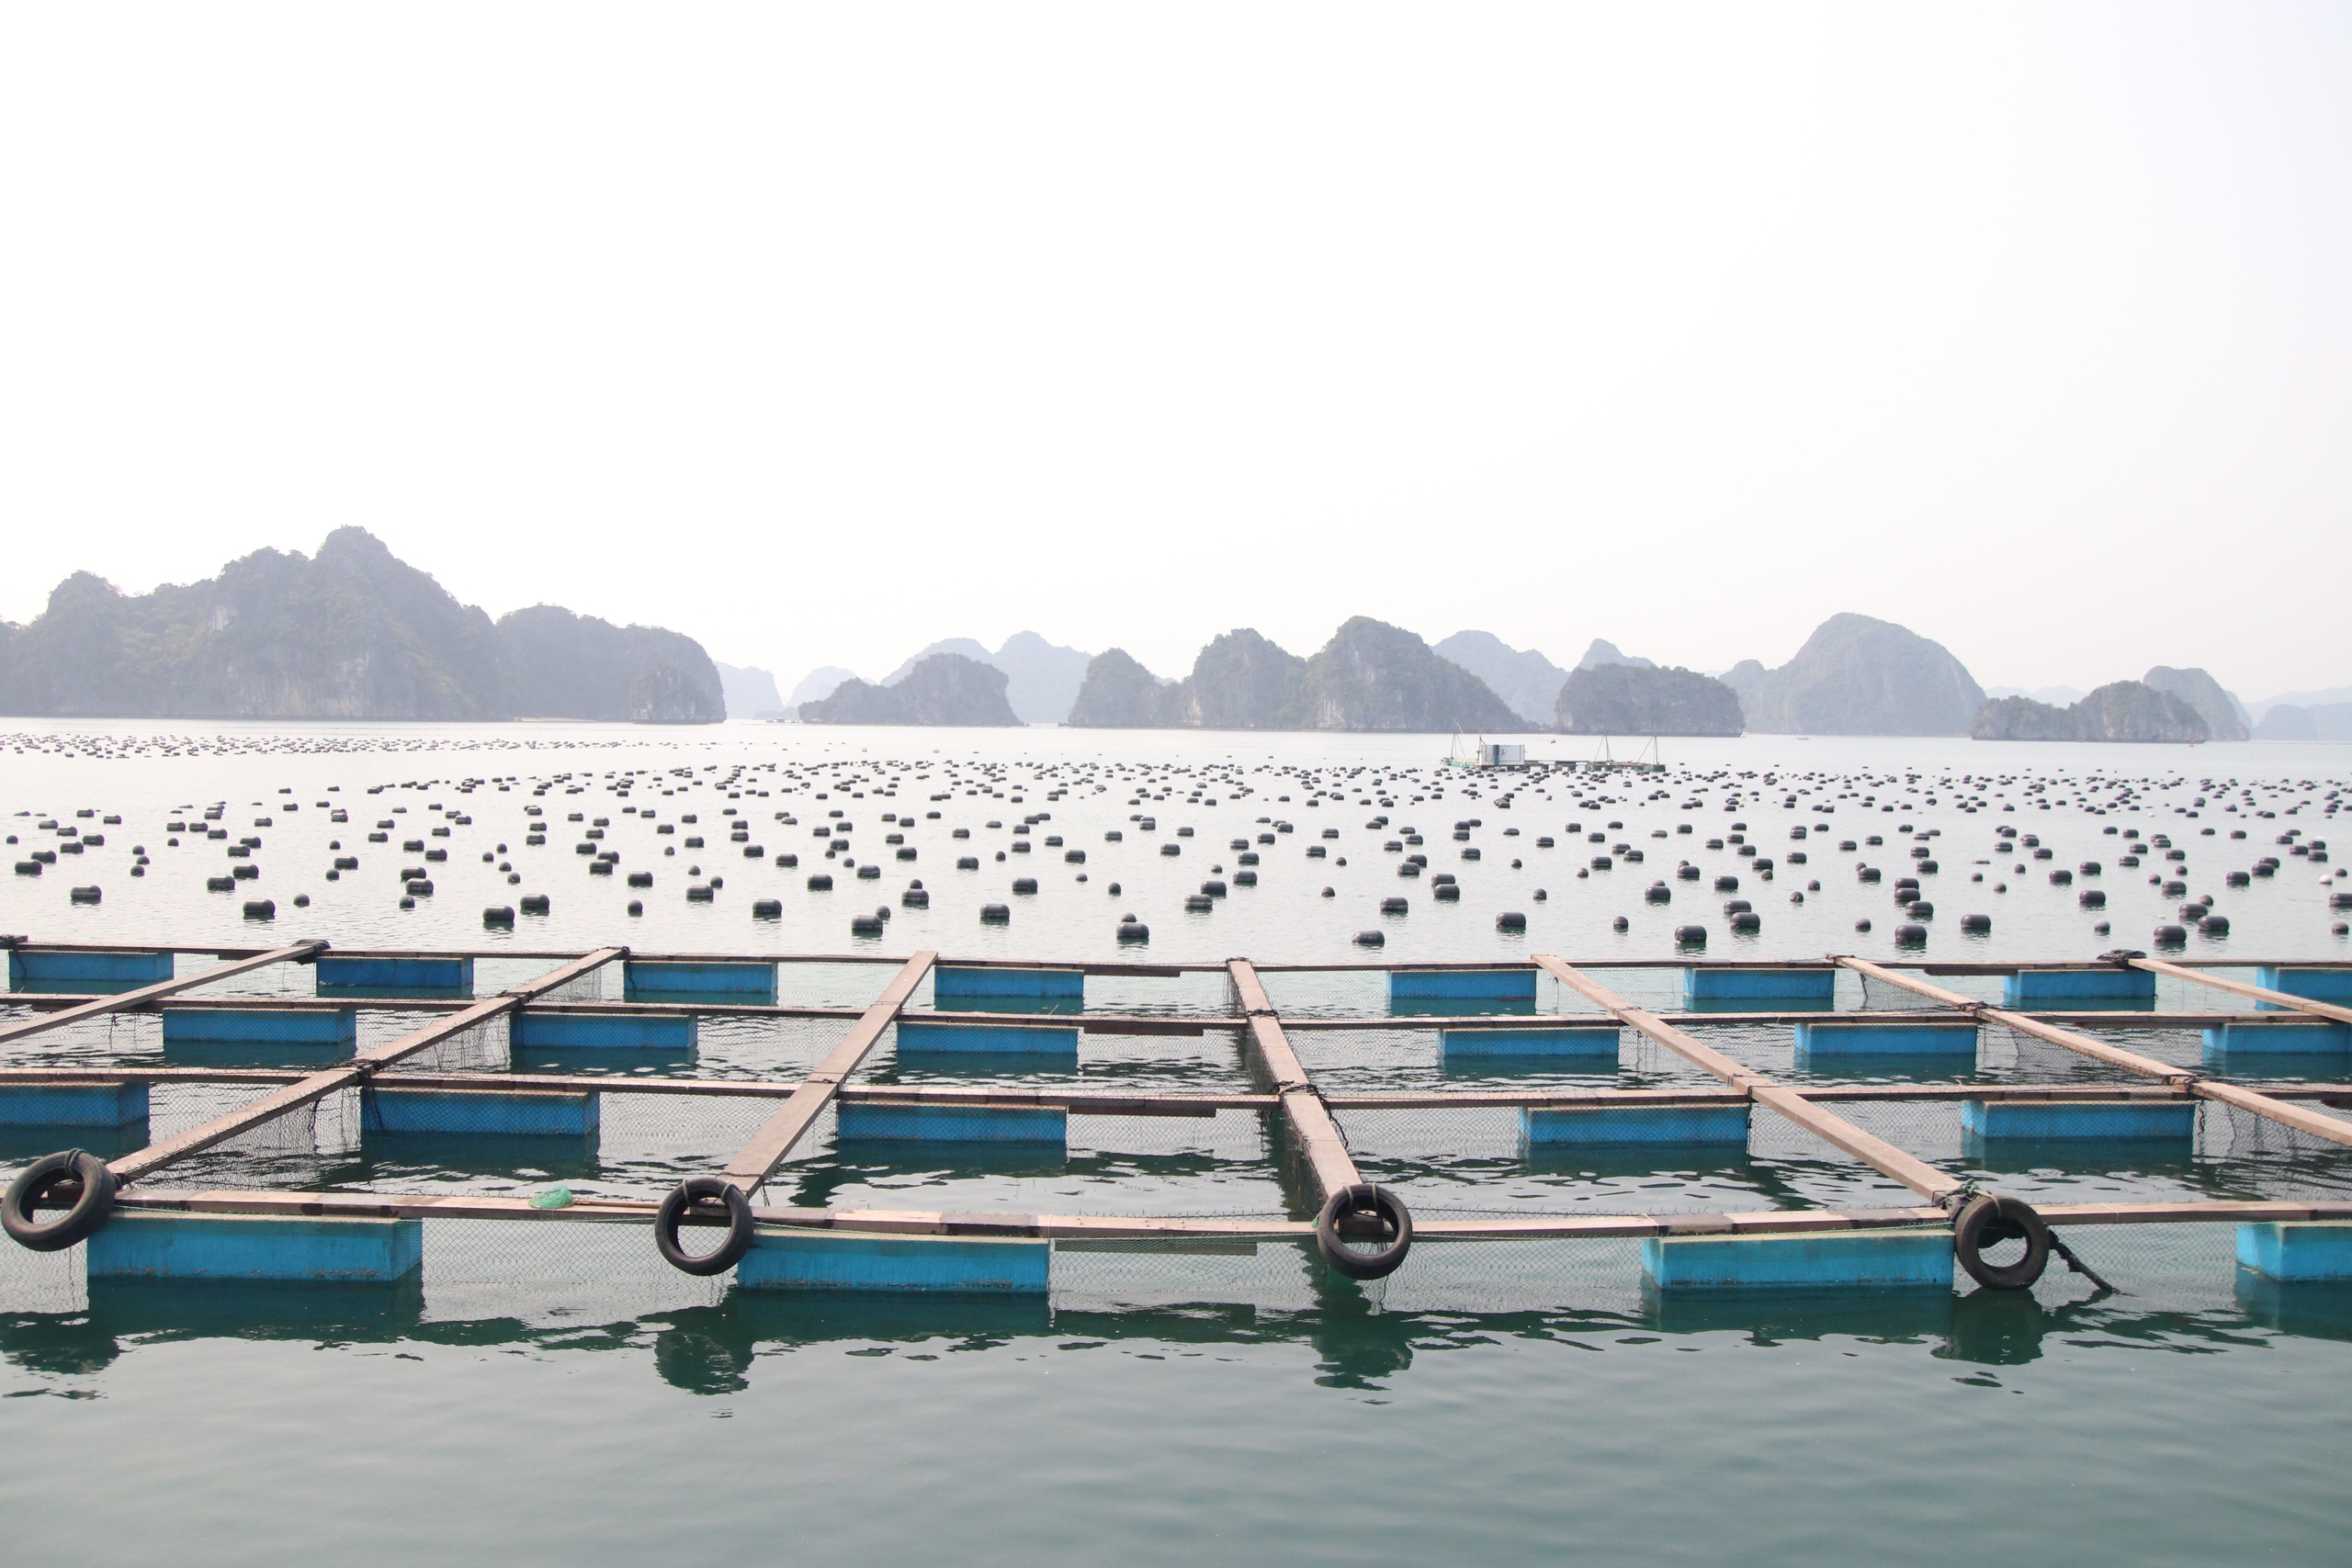 Bí thư Tỉnh ủy Quảng Ninh: Tỉnh luôn sẵn sàng, tạo mọi điều kiện thuận lợi nhất cho các nhà đầu tư nuôi biển- Ảnh 3.